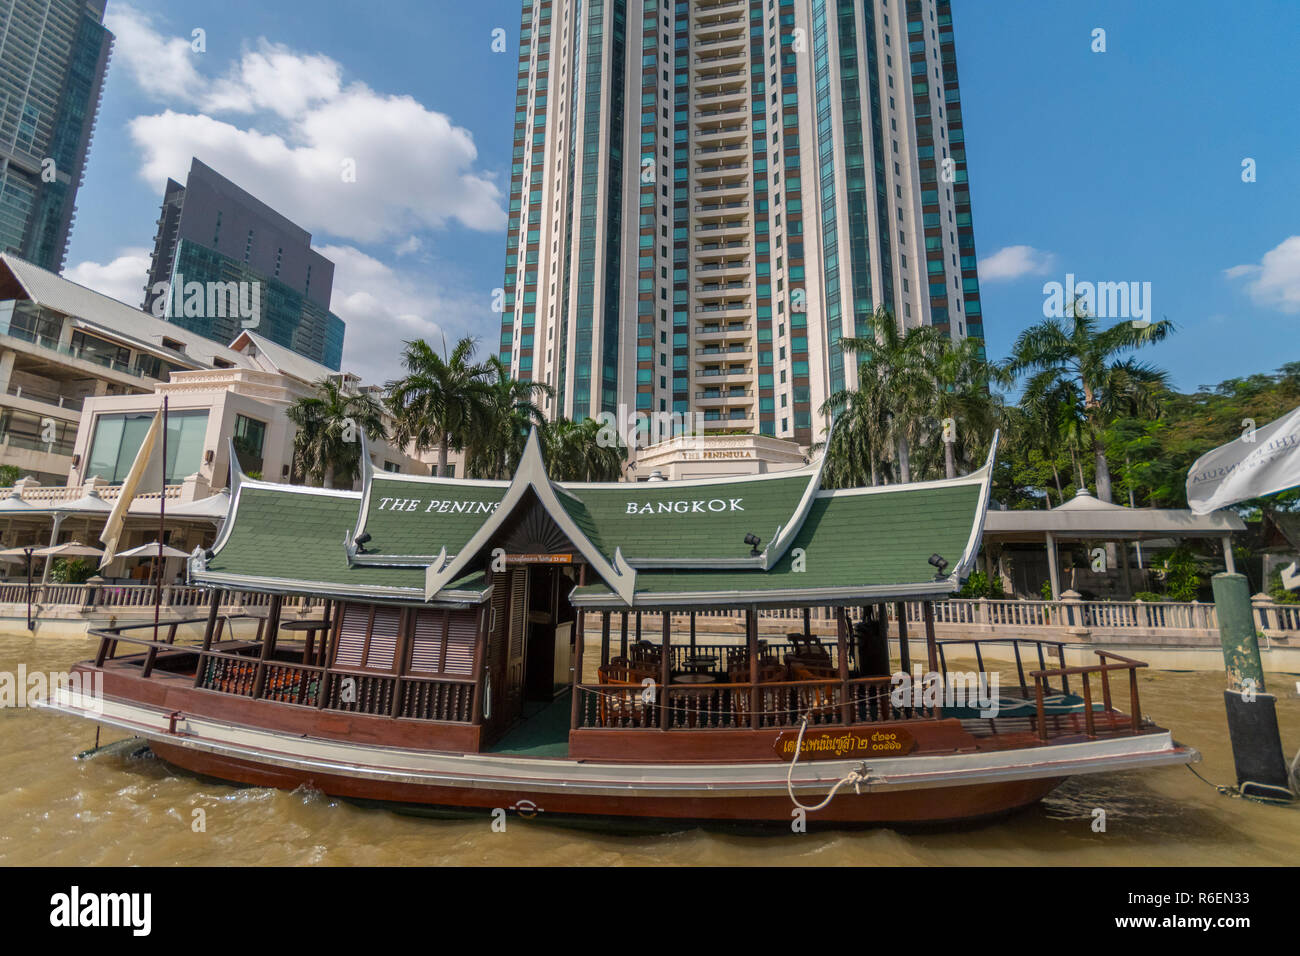 La péninsule est un hôtel de luxe situé sur la rive de la rivière Chao Phraya dans le quartier de Khlong San de Bangkok Thaïlande Banque D'Images